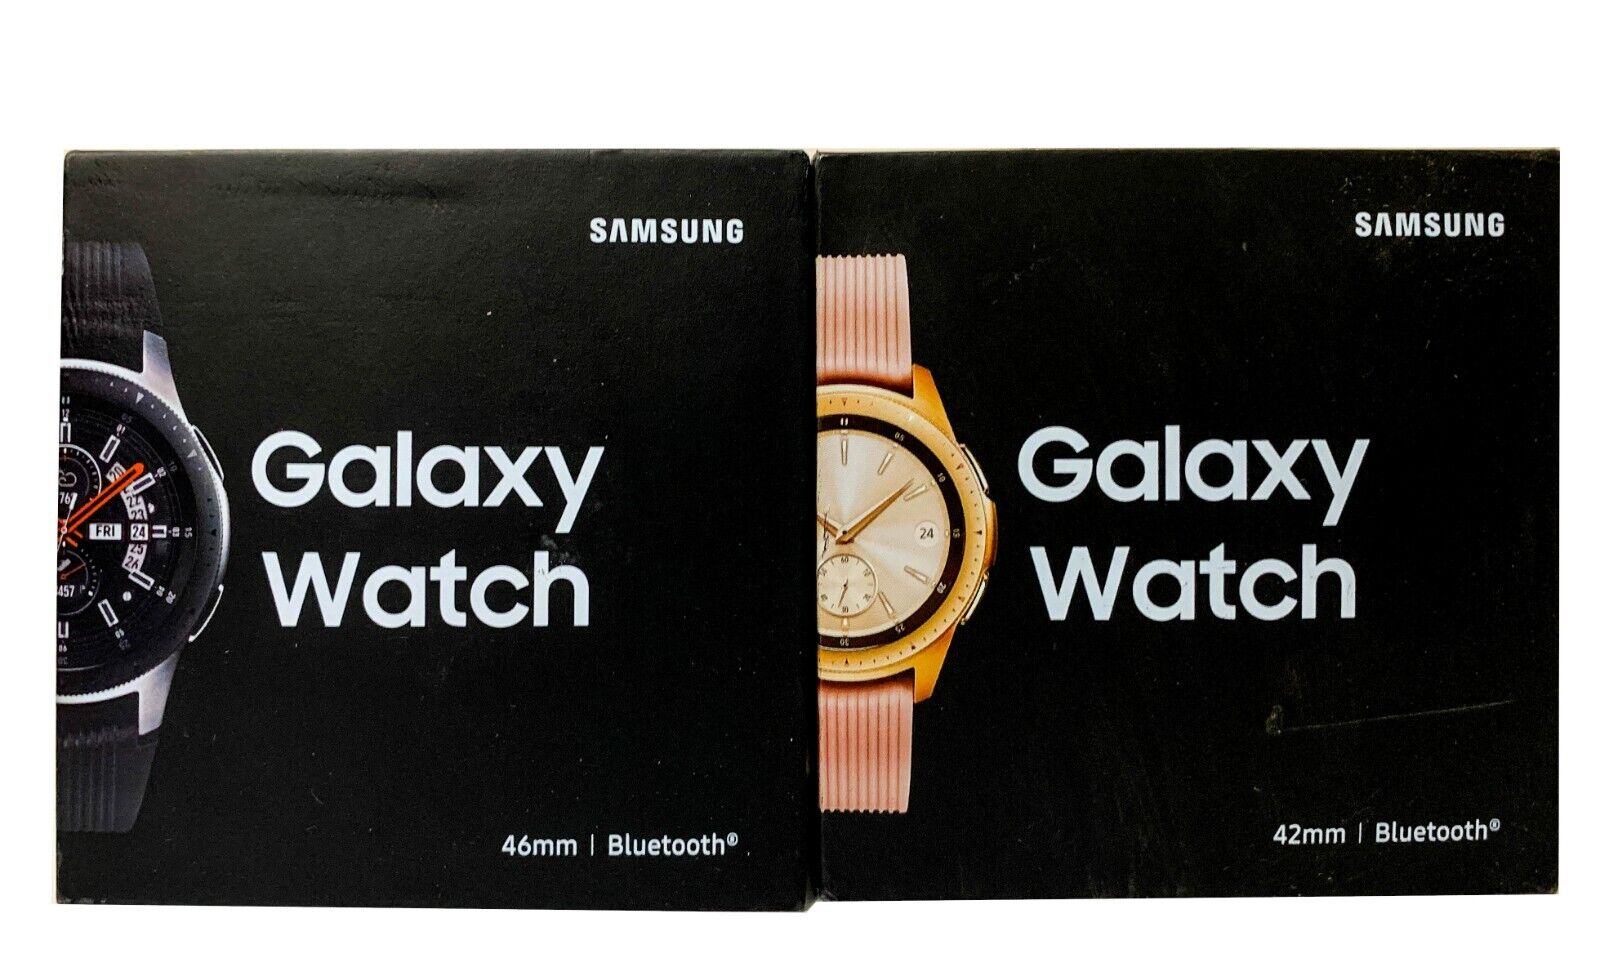 Samsung Galaxy Watch SM-R810 AMOLED Smartwatch 42mm Bluetooth - Black & Gold